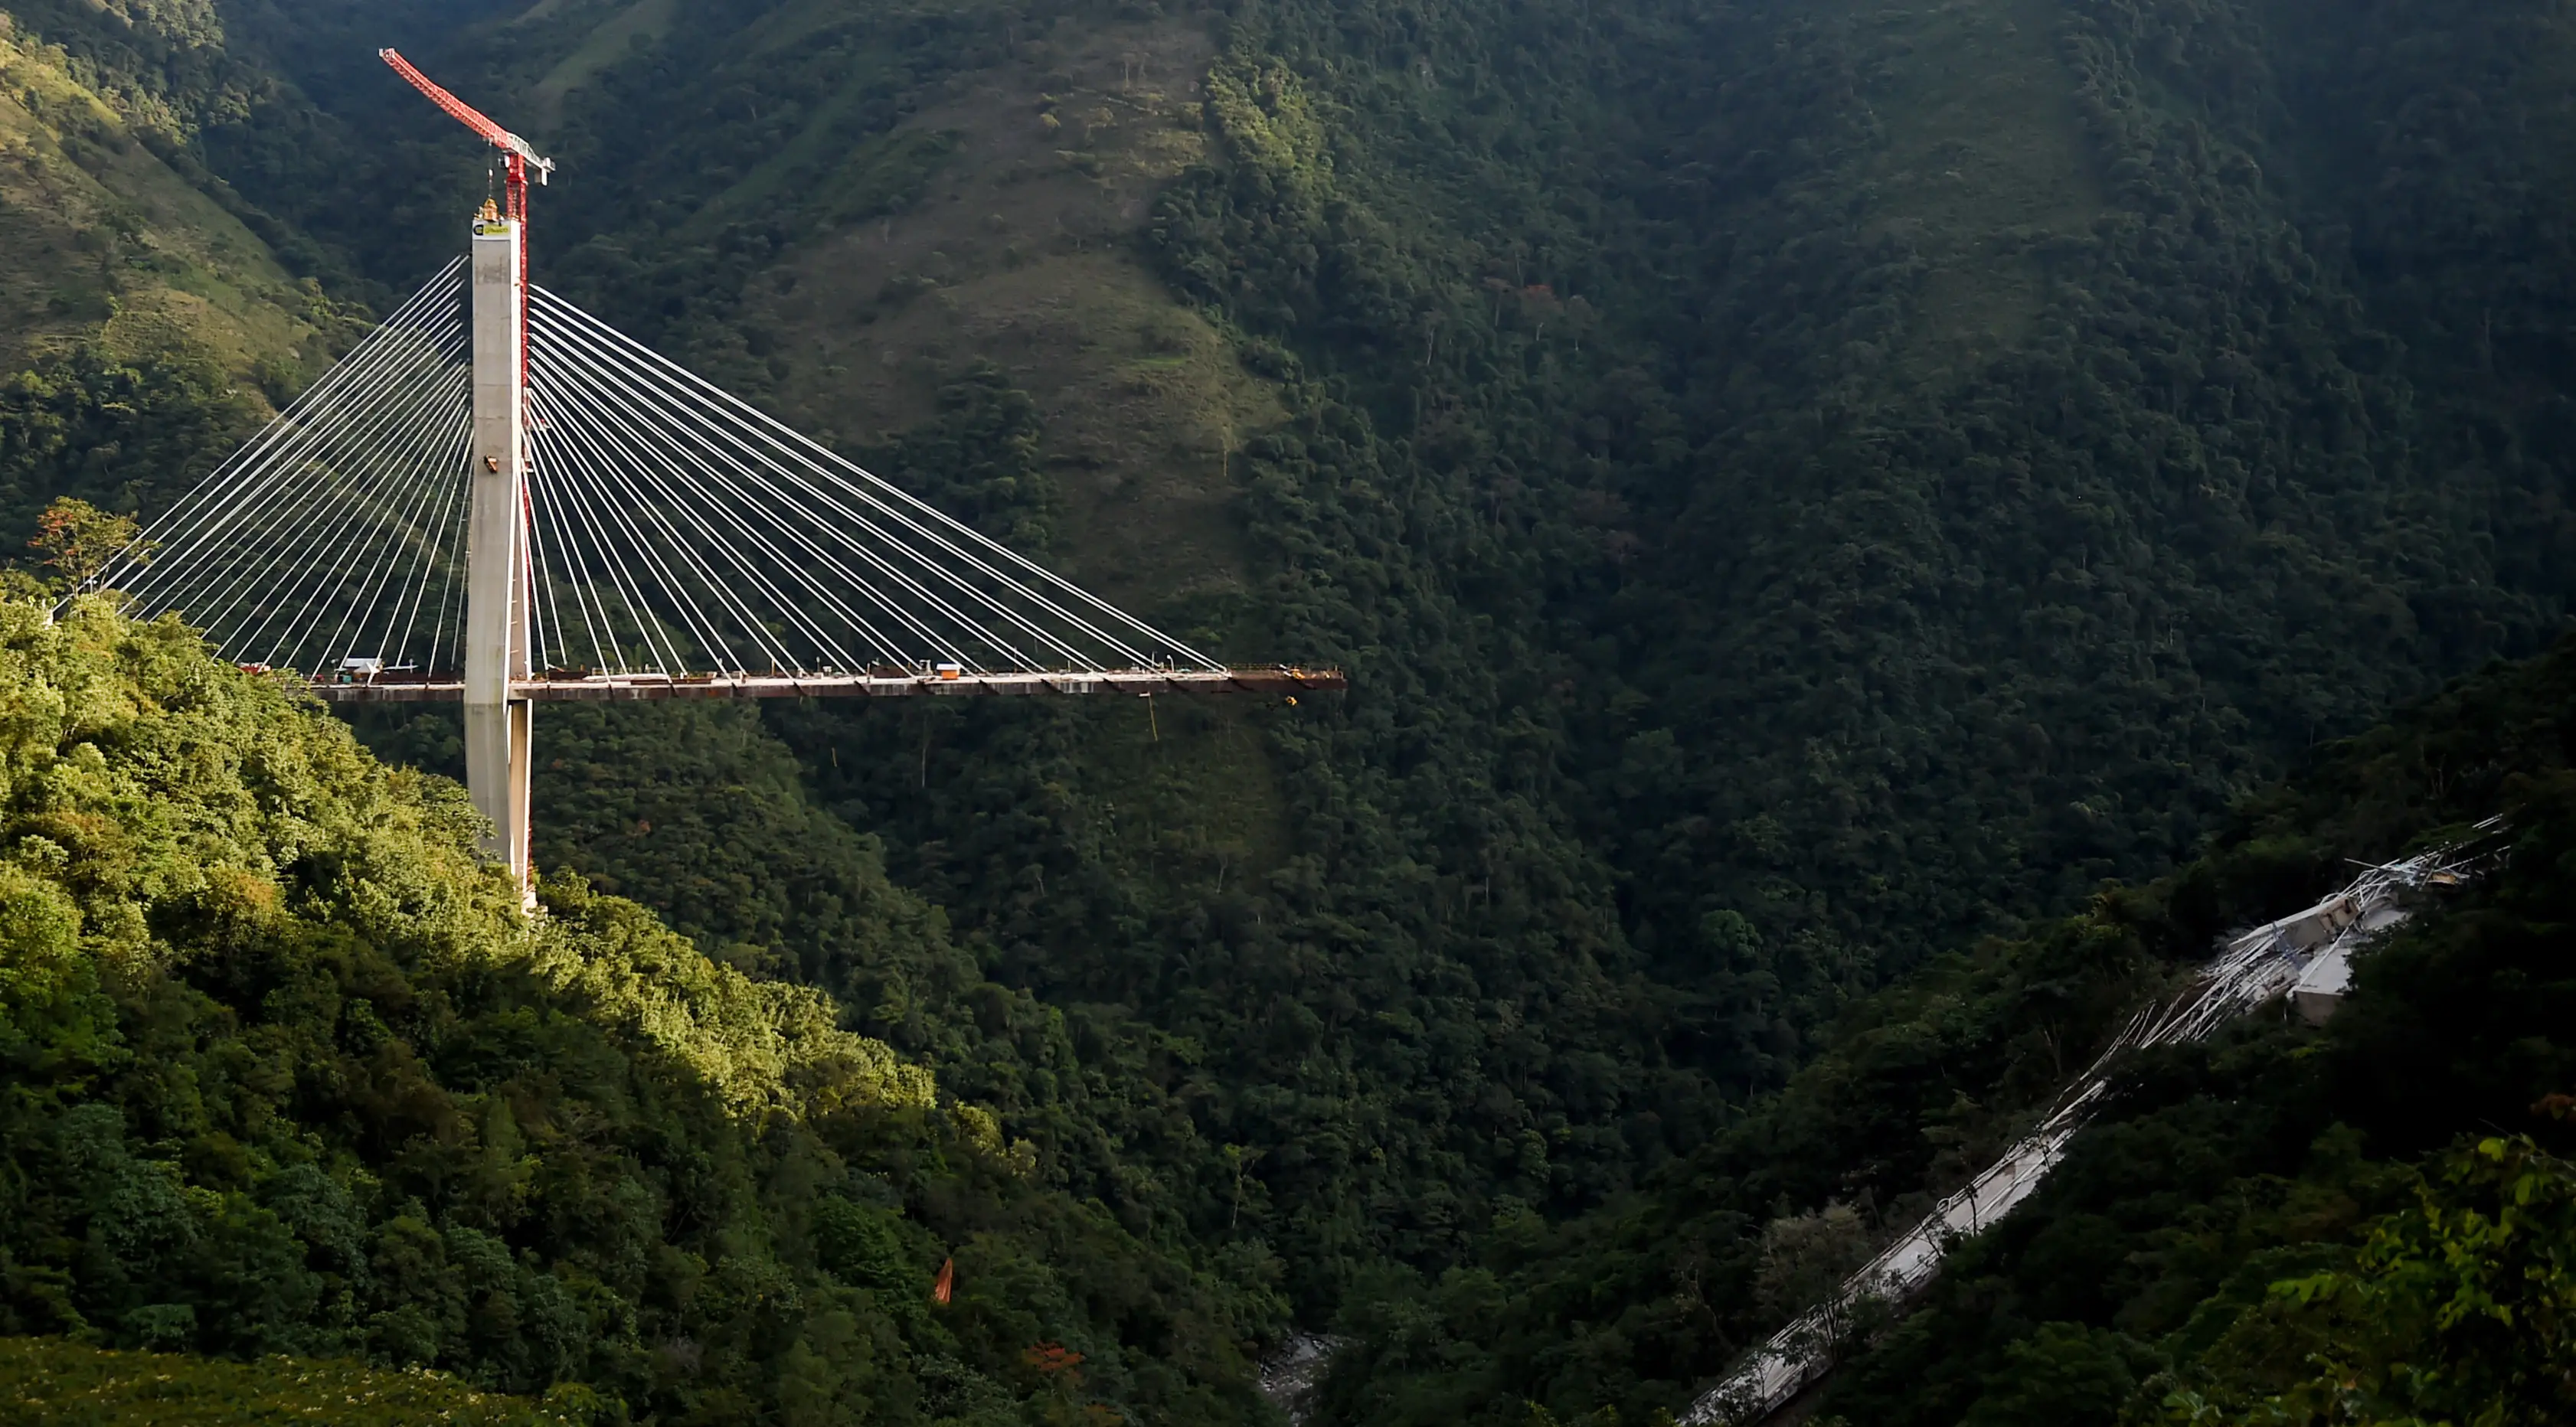 Sebuah jembatan yang menghubungkan Bogota dengan Kota Villavicencio ambruk di kota Guayabetal, Senin (16/1).  Jembatan bernama Jembatan Chirajara itu tengah dalam konstruksi dan tidak beroperasi ketika mengalami kejadian nahas tersebut (Raul Arboleda/AFP)